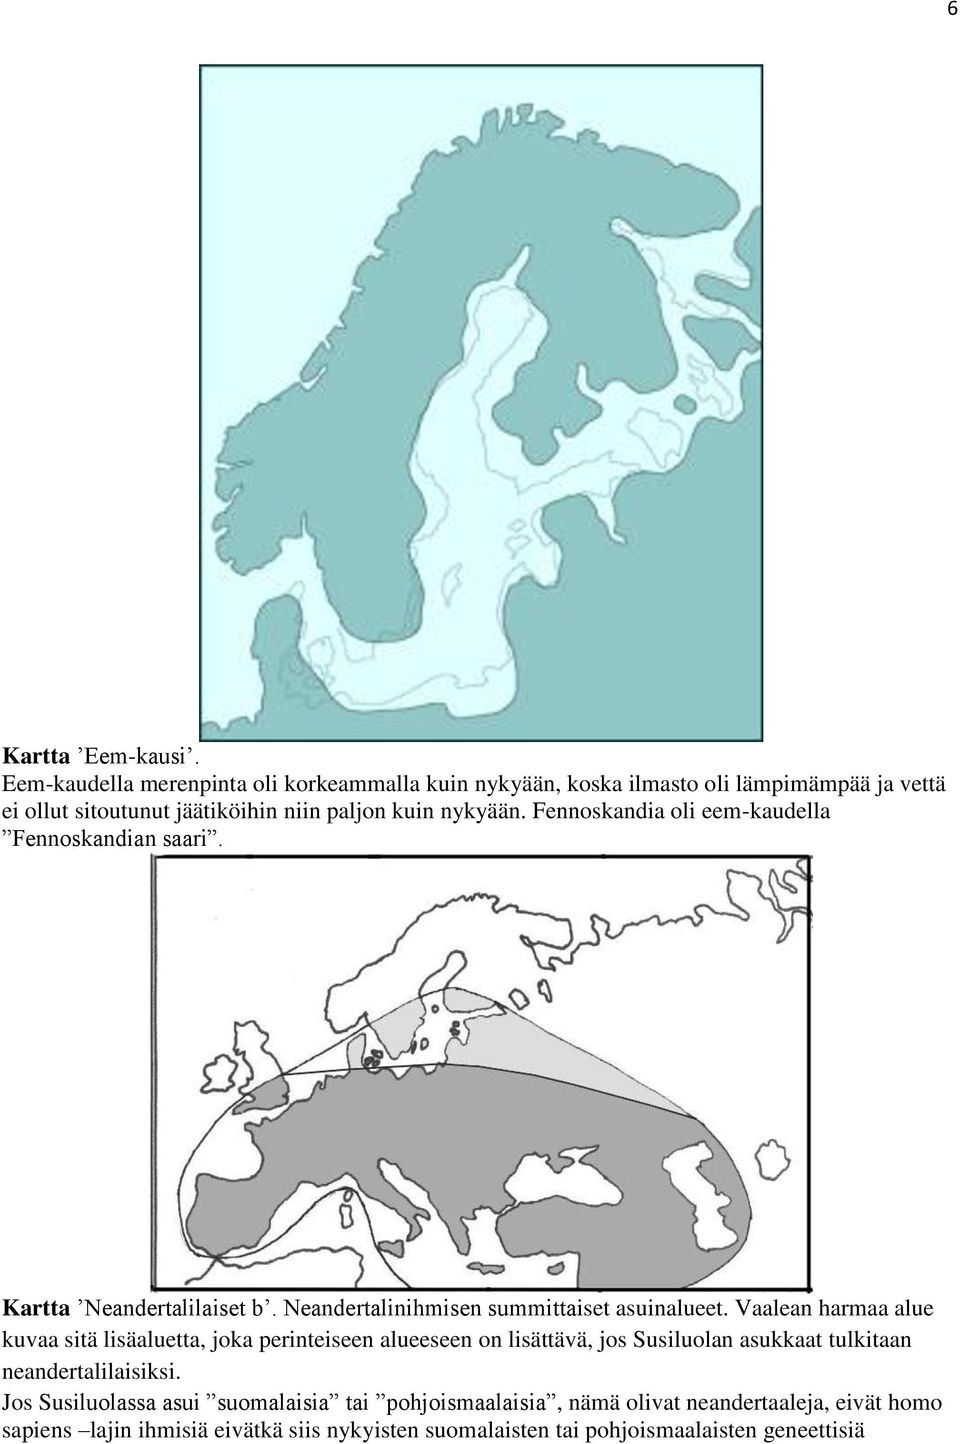 Fennoskandia oli eem-kaudella Fennoskandian saari. Kartta Neandertalilaiset b. Neandertalinihmisen summittaiset asuinalueet.